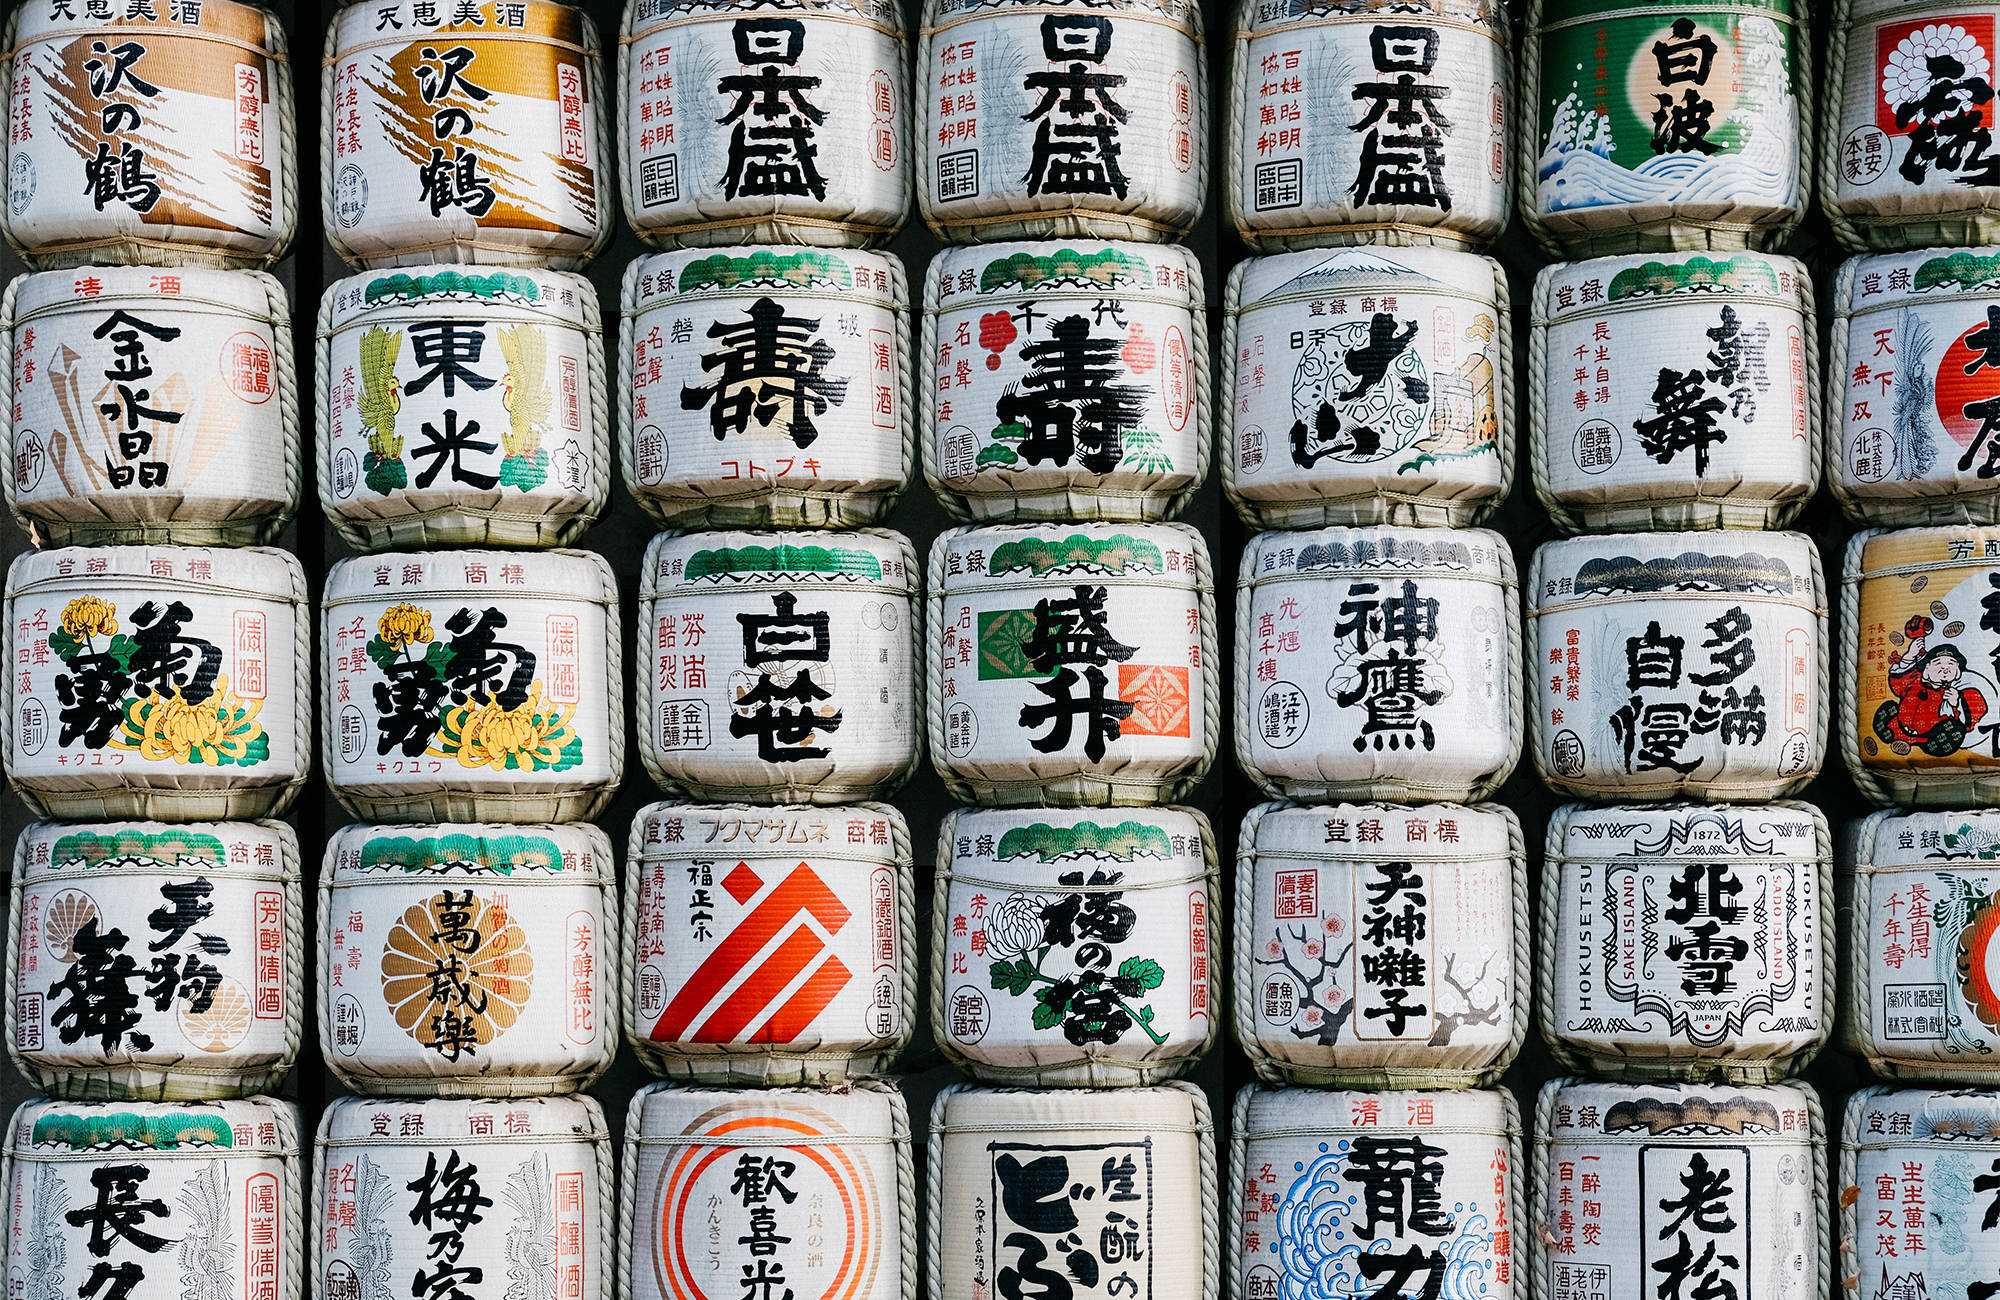 japan-sake-package-shibuya-cover